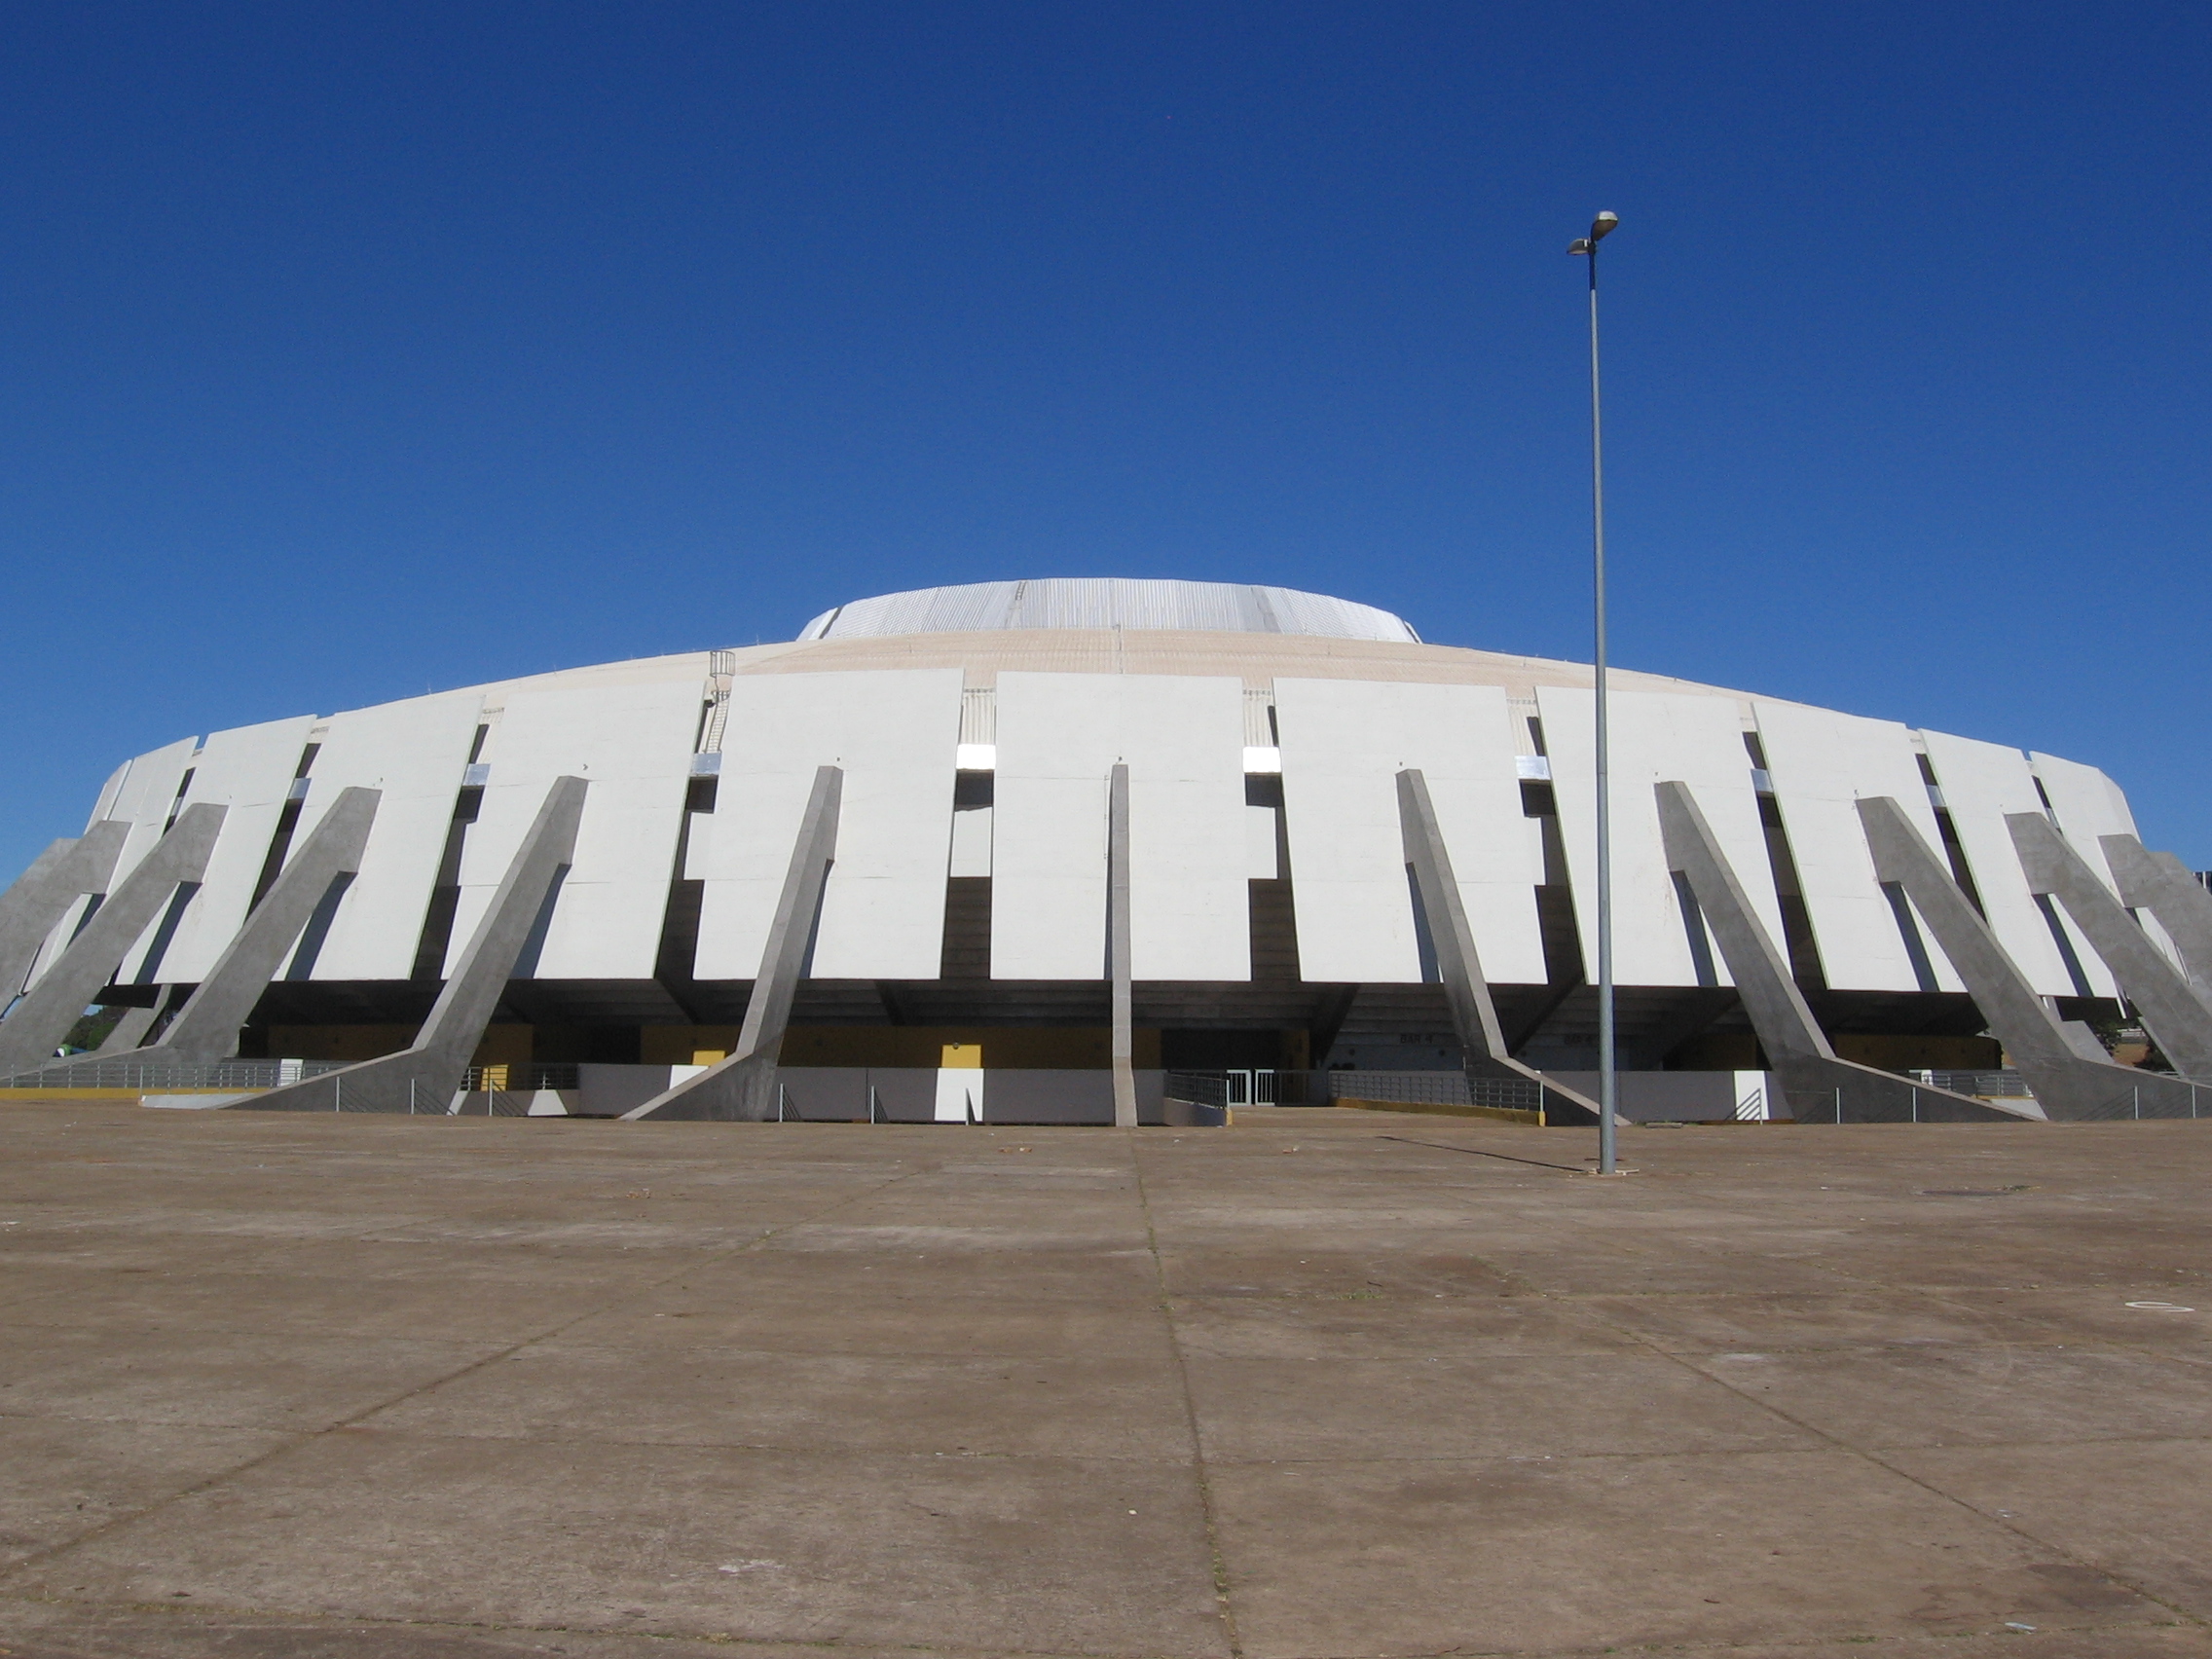 Próximo evento do UFC no Brasil será em março de 2020, em Brasília, afirma site